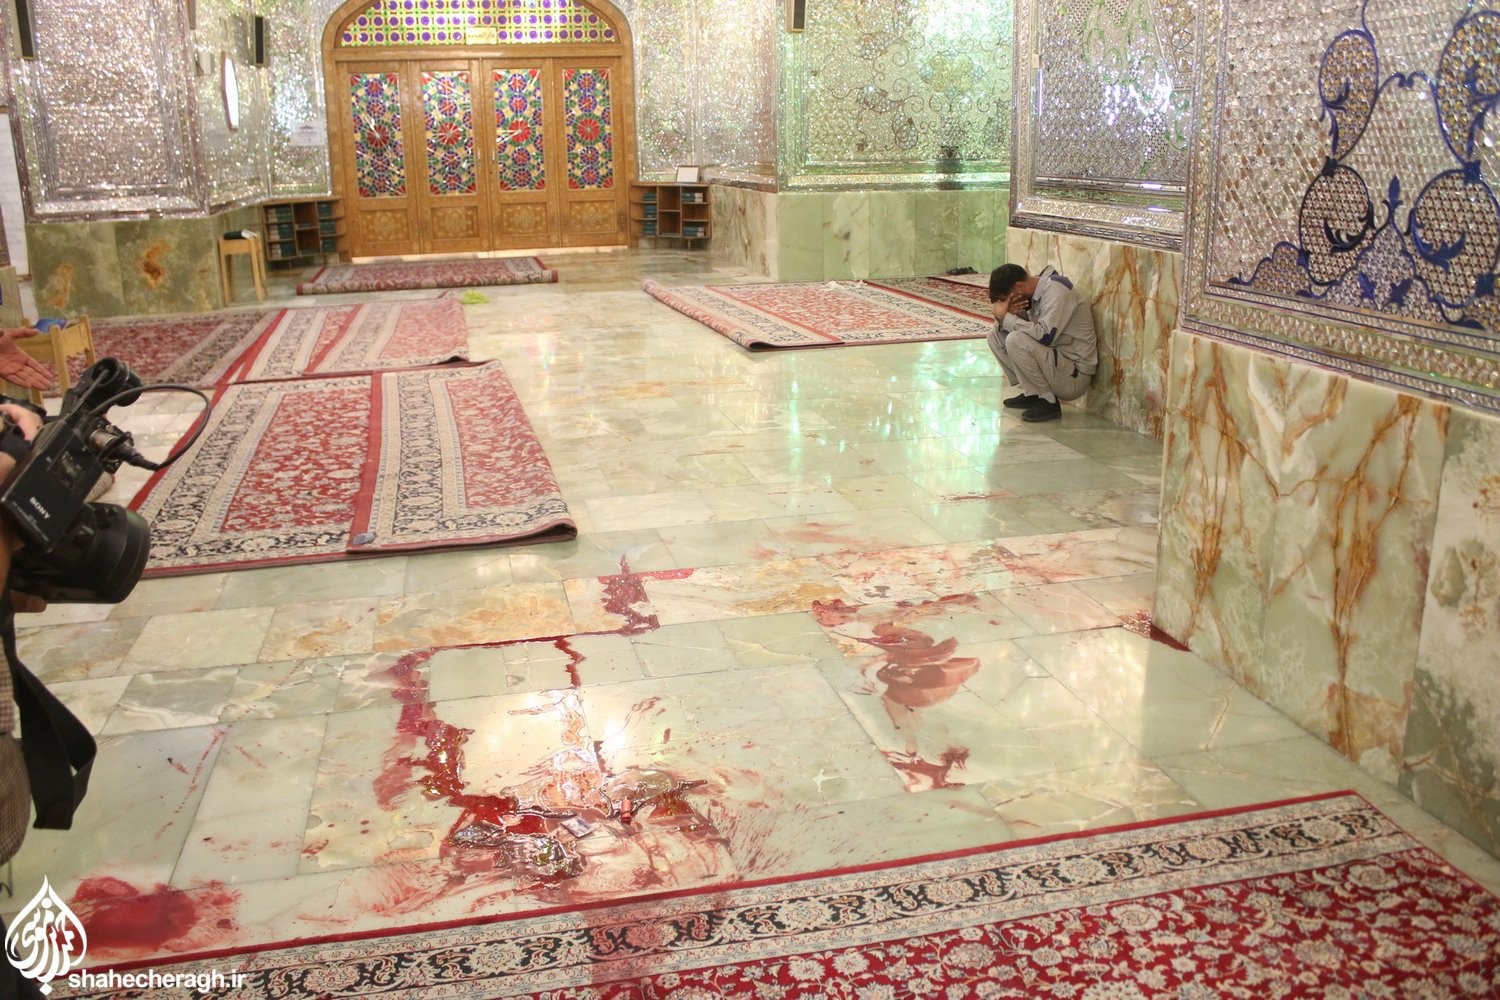 В Иране открыли стрельбу у мавзолея Шах-Черах: 15 погибших, десятки раненых (фото) - 5 - изображение